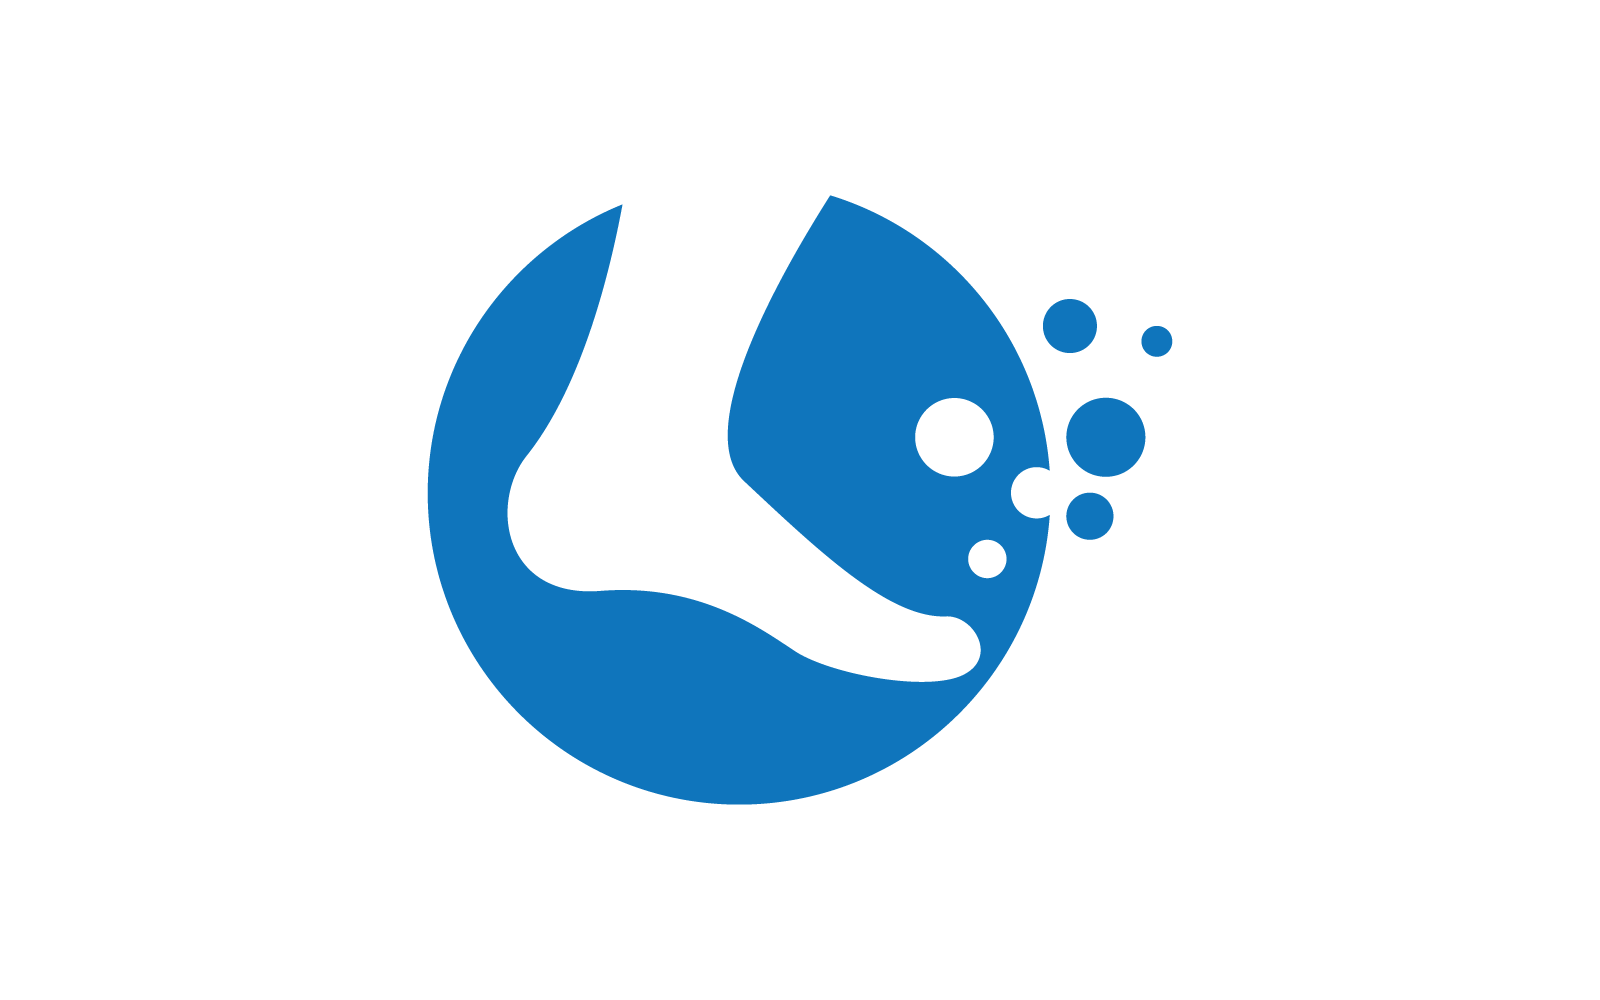 Foot logo illustration vector flat design